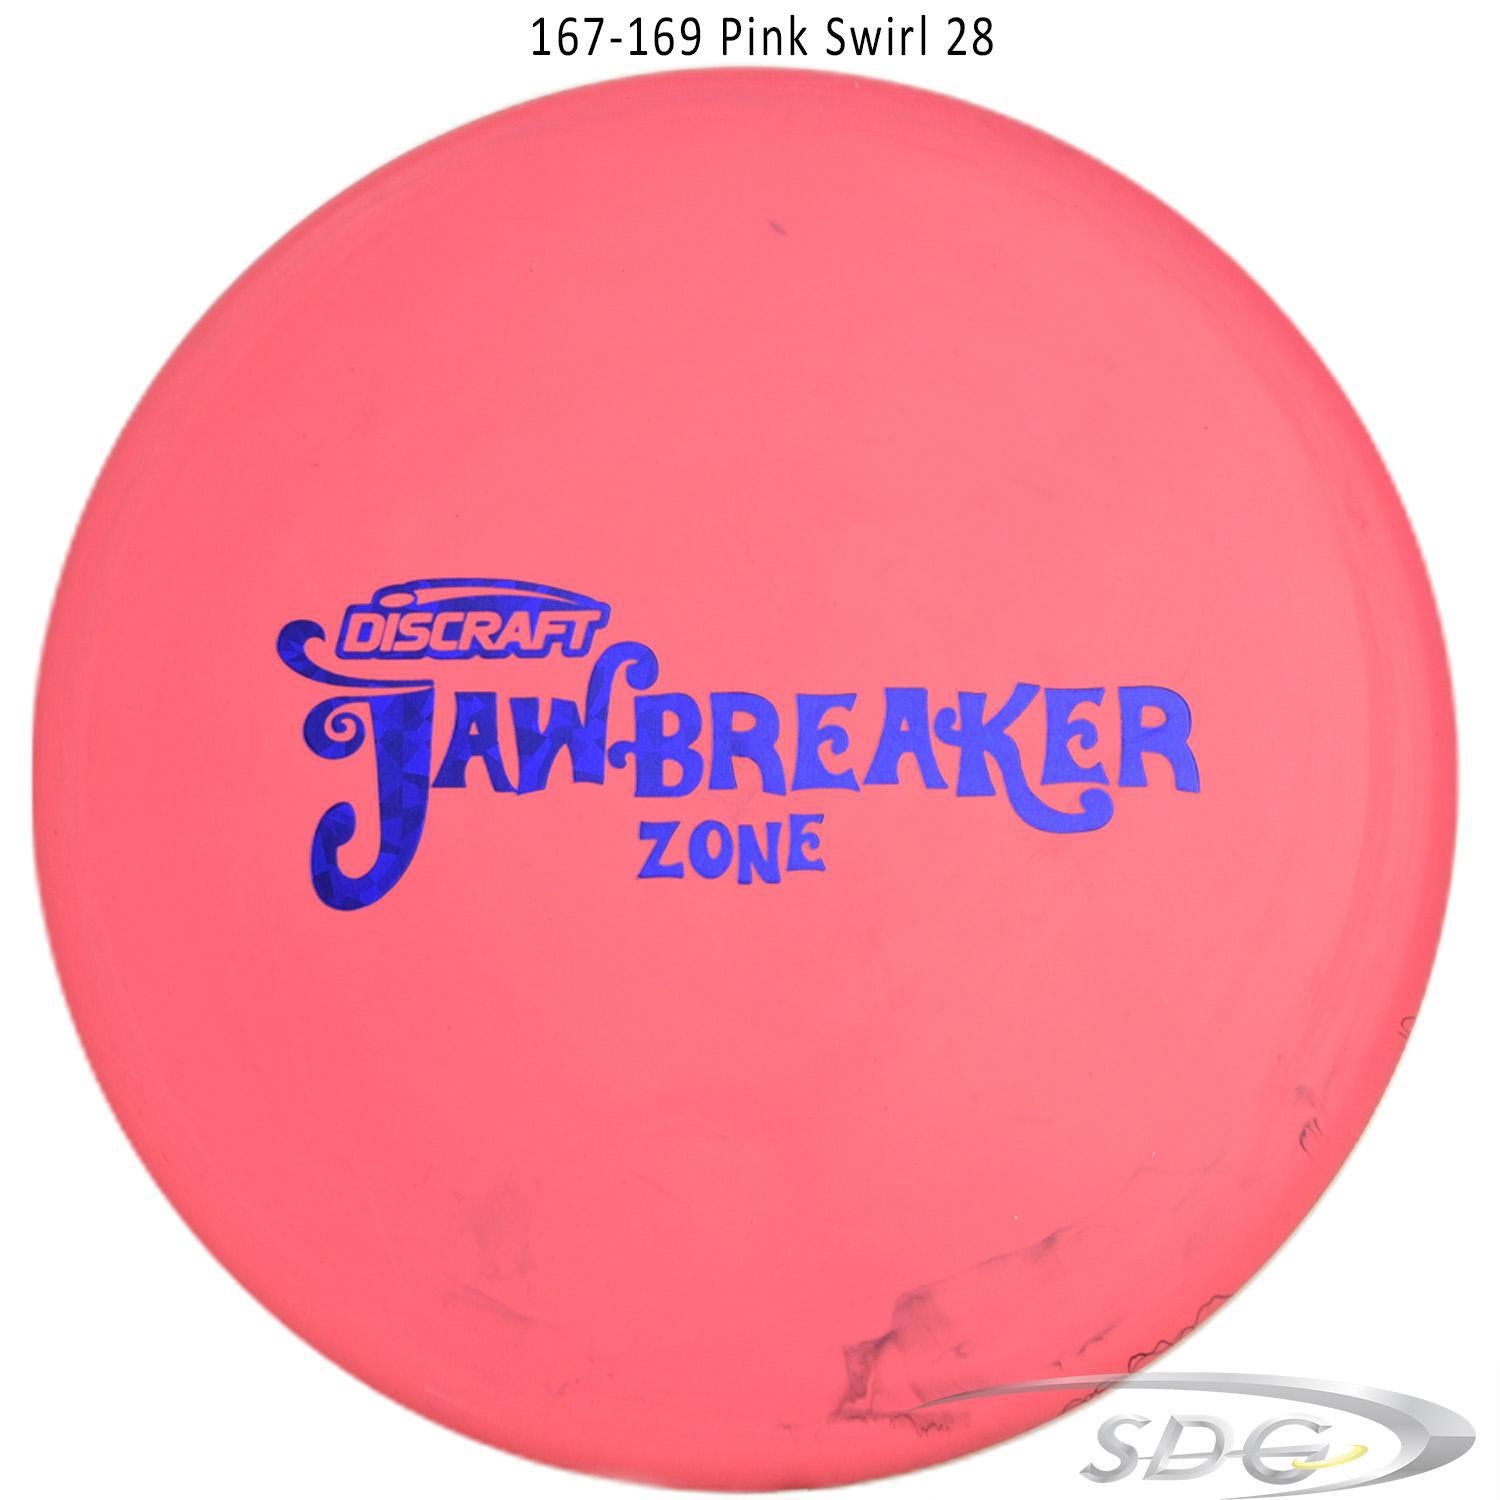 discraft-jawbreaker-zone-disc-golf-putter-169-160-weights 167-169 Pink Swirl 28 